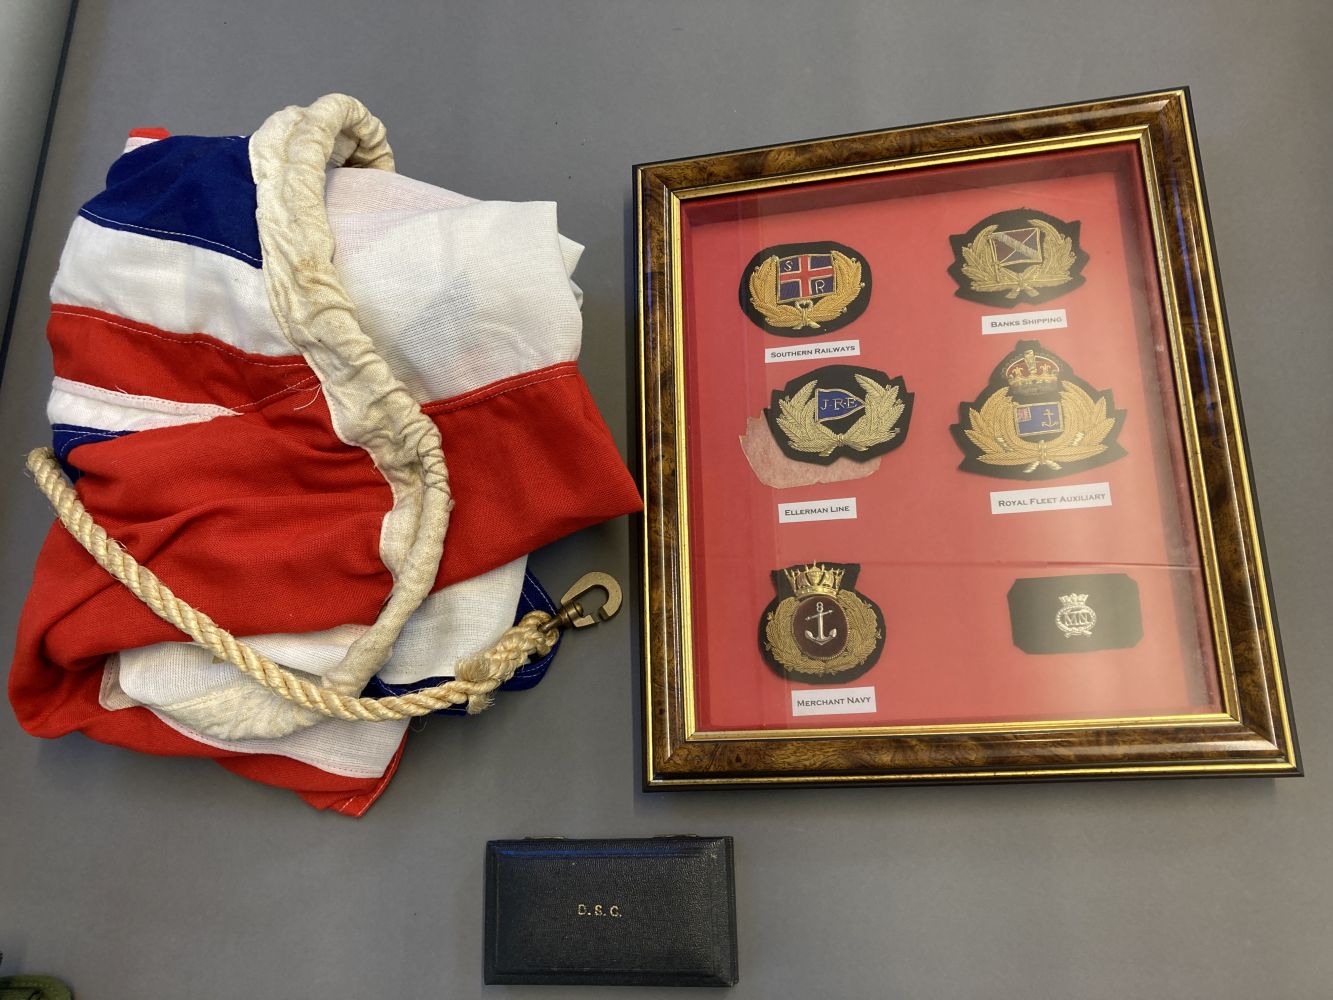 Distinguished Service Cross. Royal Navy DSC medal case, Garrard & Co Ltd